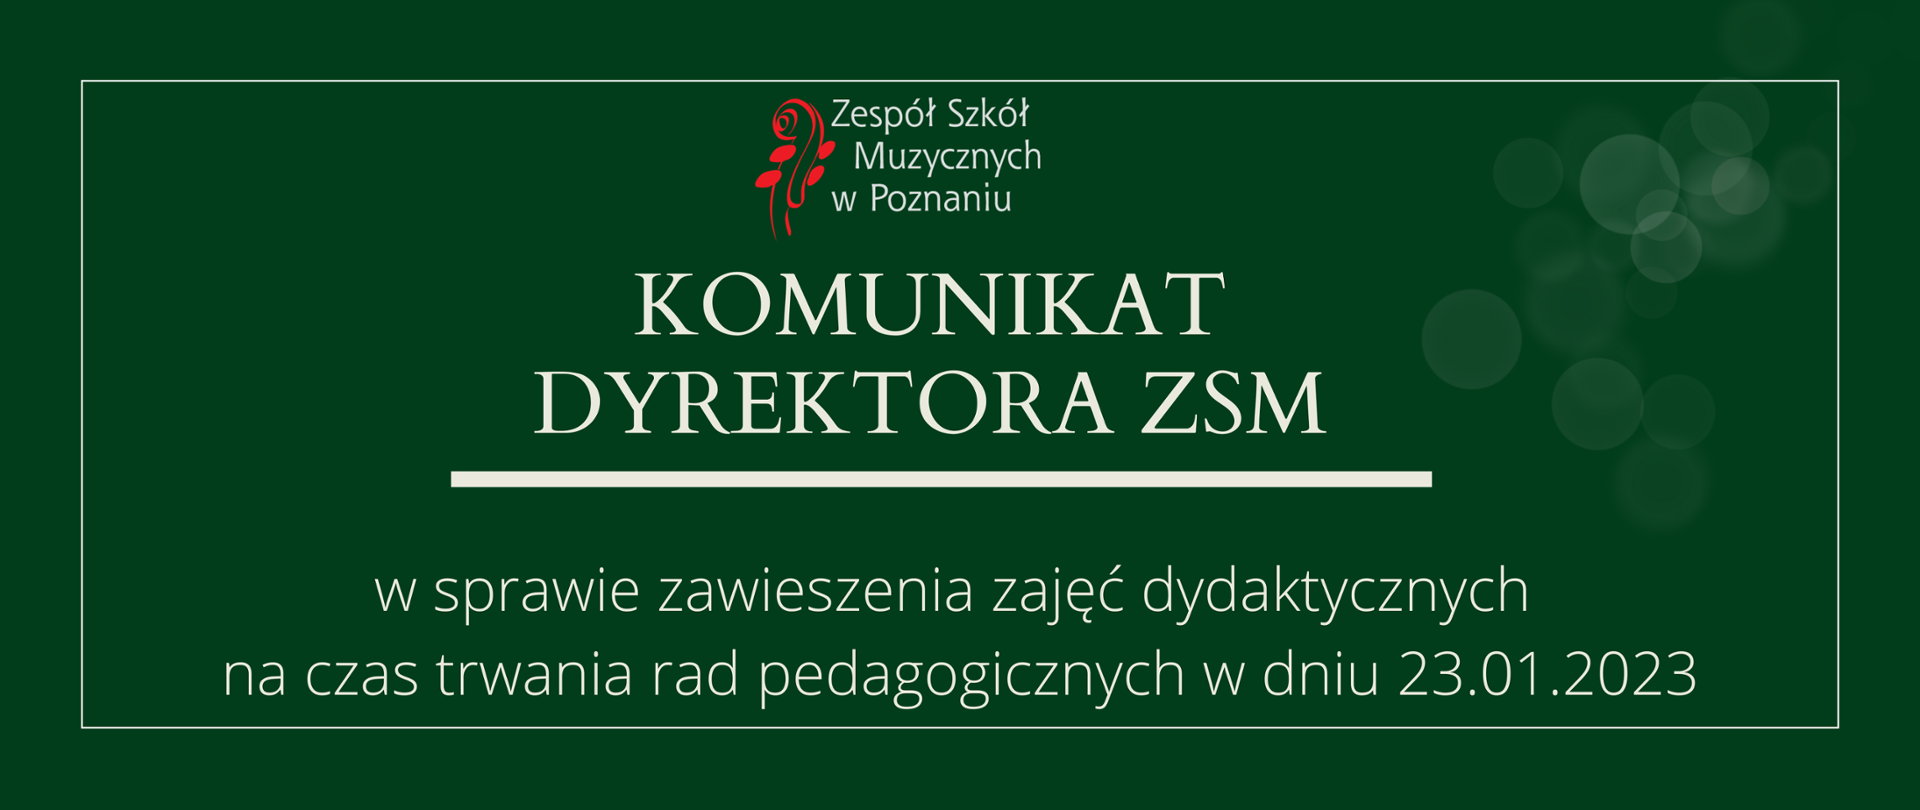 Zielona grafika z logo ZSM i tekstem /"KOMUNIKAT DYREKTORA ZSM"/ poniżej biała gruba linia, niżej tekst /"W sprawie zawieszenia zajęć dydaktycznych na czas trwania rad pedagogicznych w dniu 23.01.2023"/